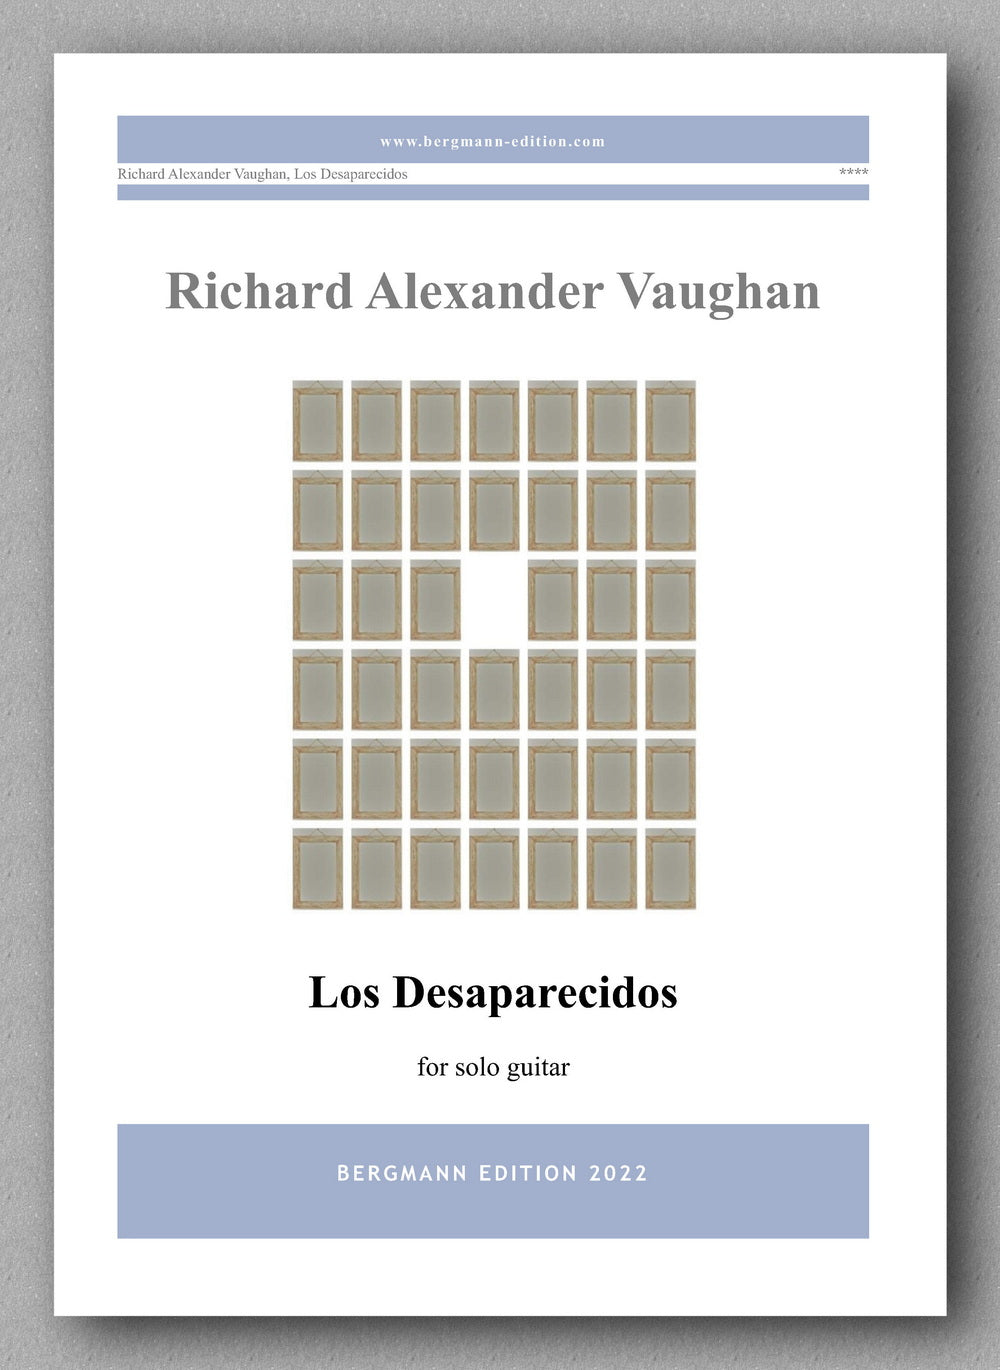 Los Desaparecidos by Richard Alexander Vaughan - cover